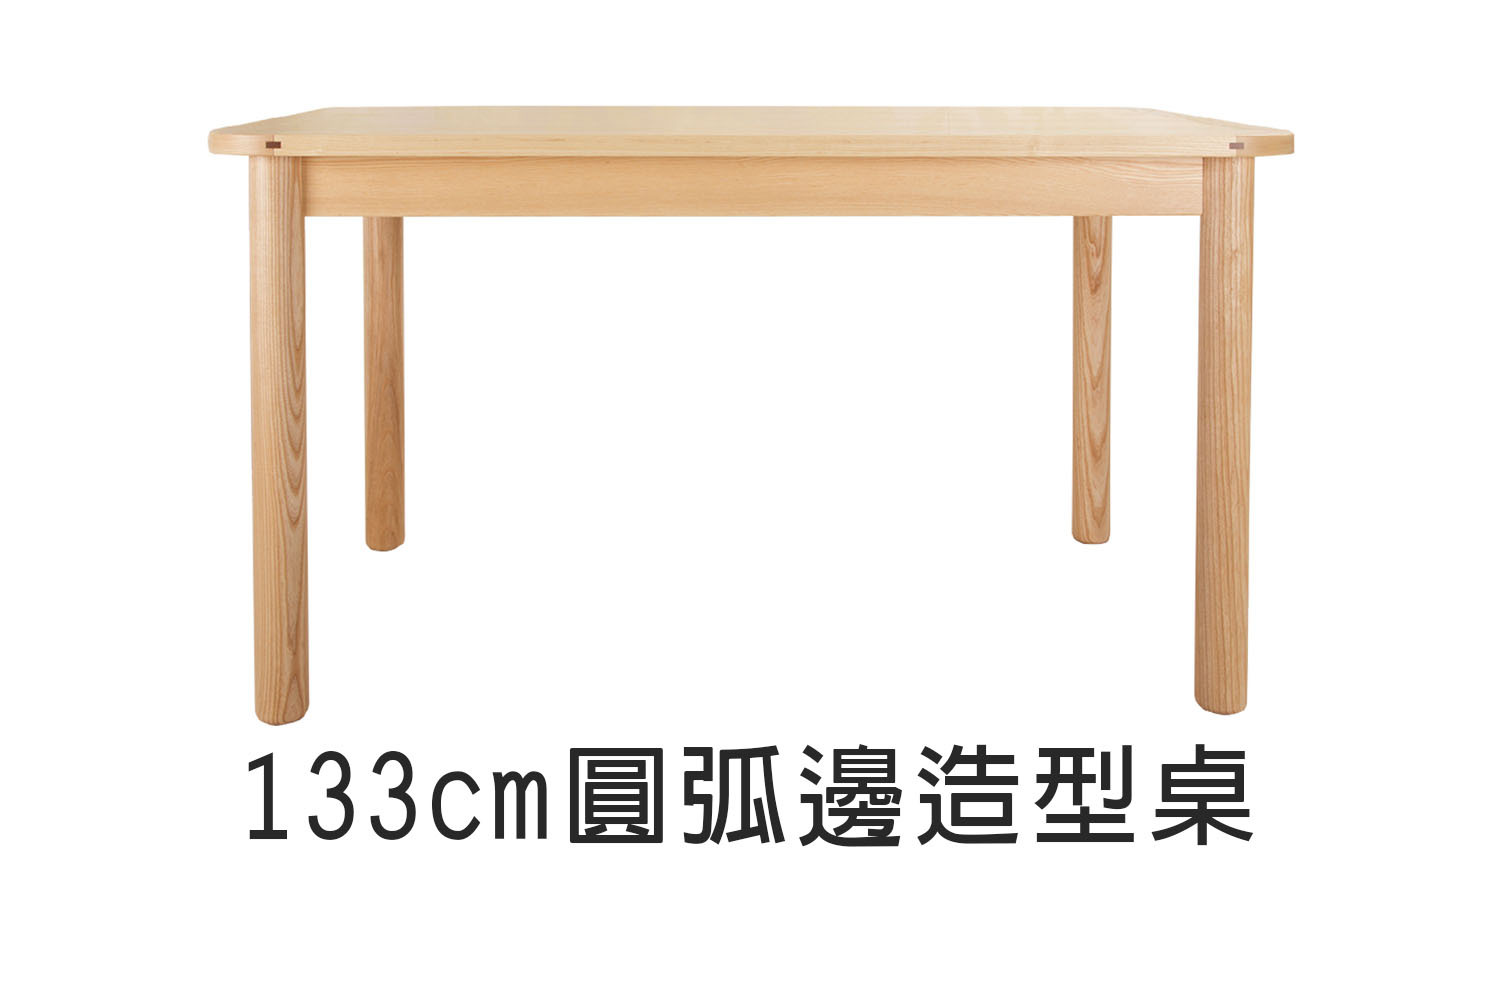 北歐風圓弧邊造型實木餐桌-133cm WRDT001R